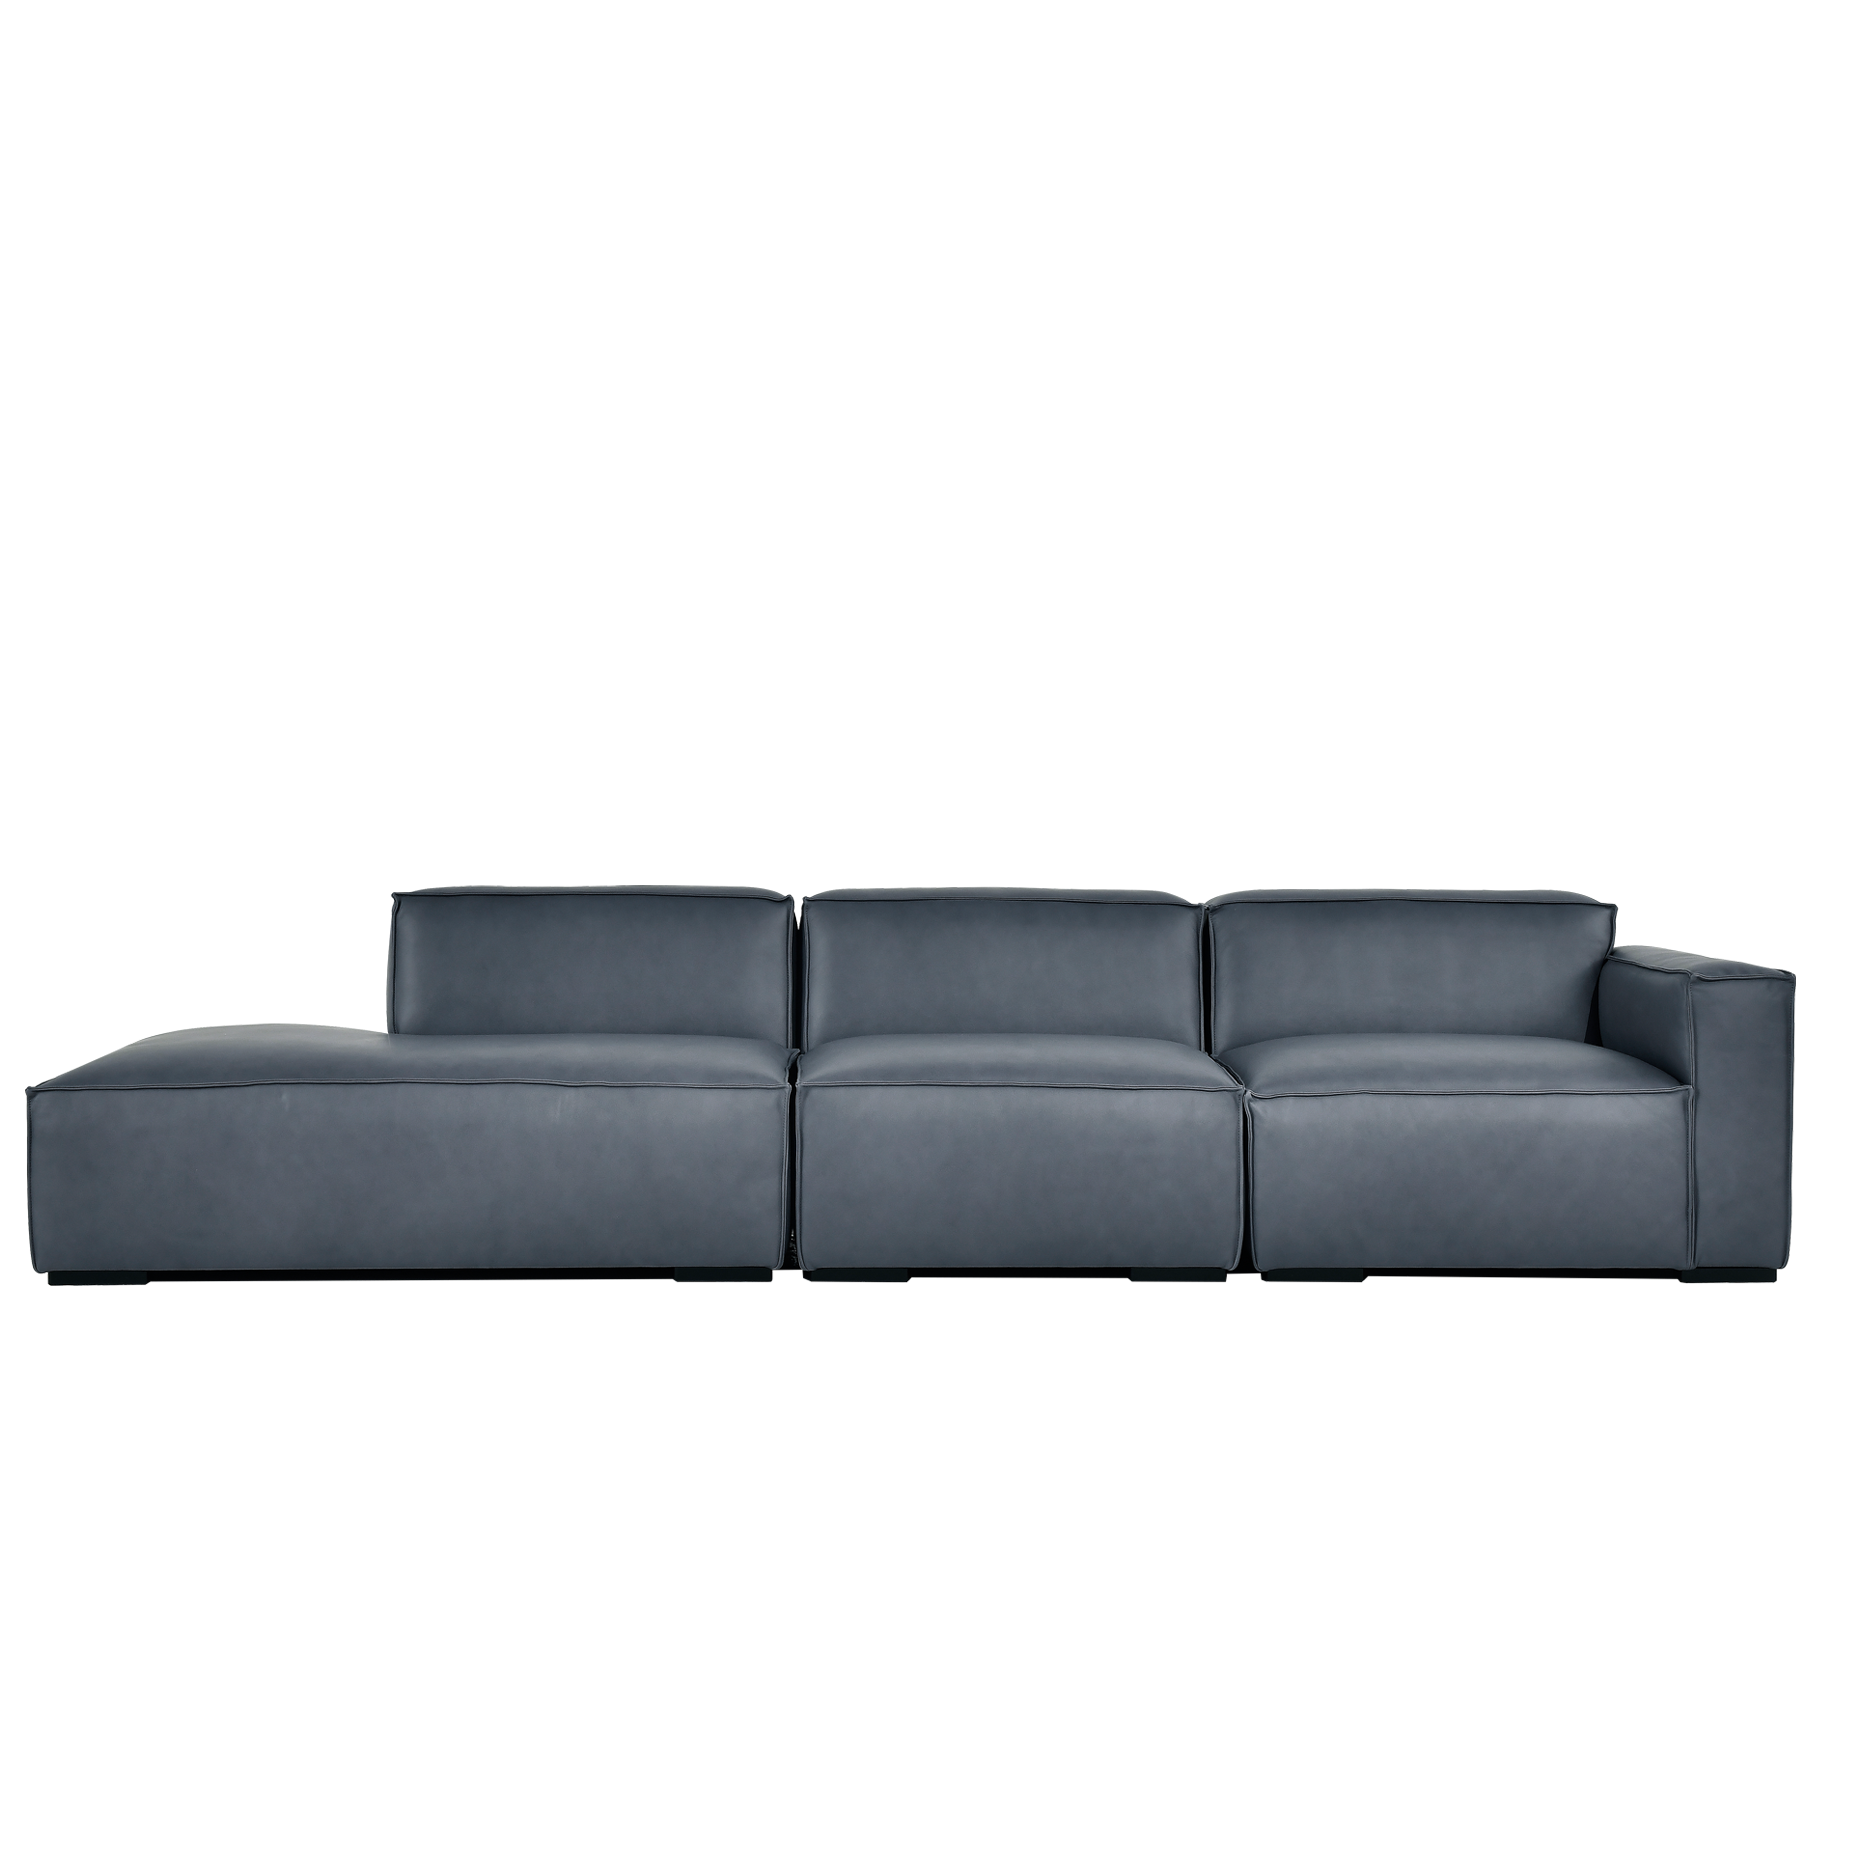 (주)도이치 DOICH ®    PEN2 modular couch sofa 도이치 펜2  4인 카우치 모듈소파  [4주 주문제작]